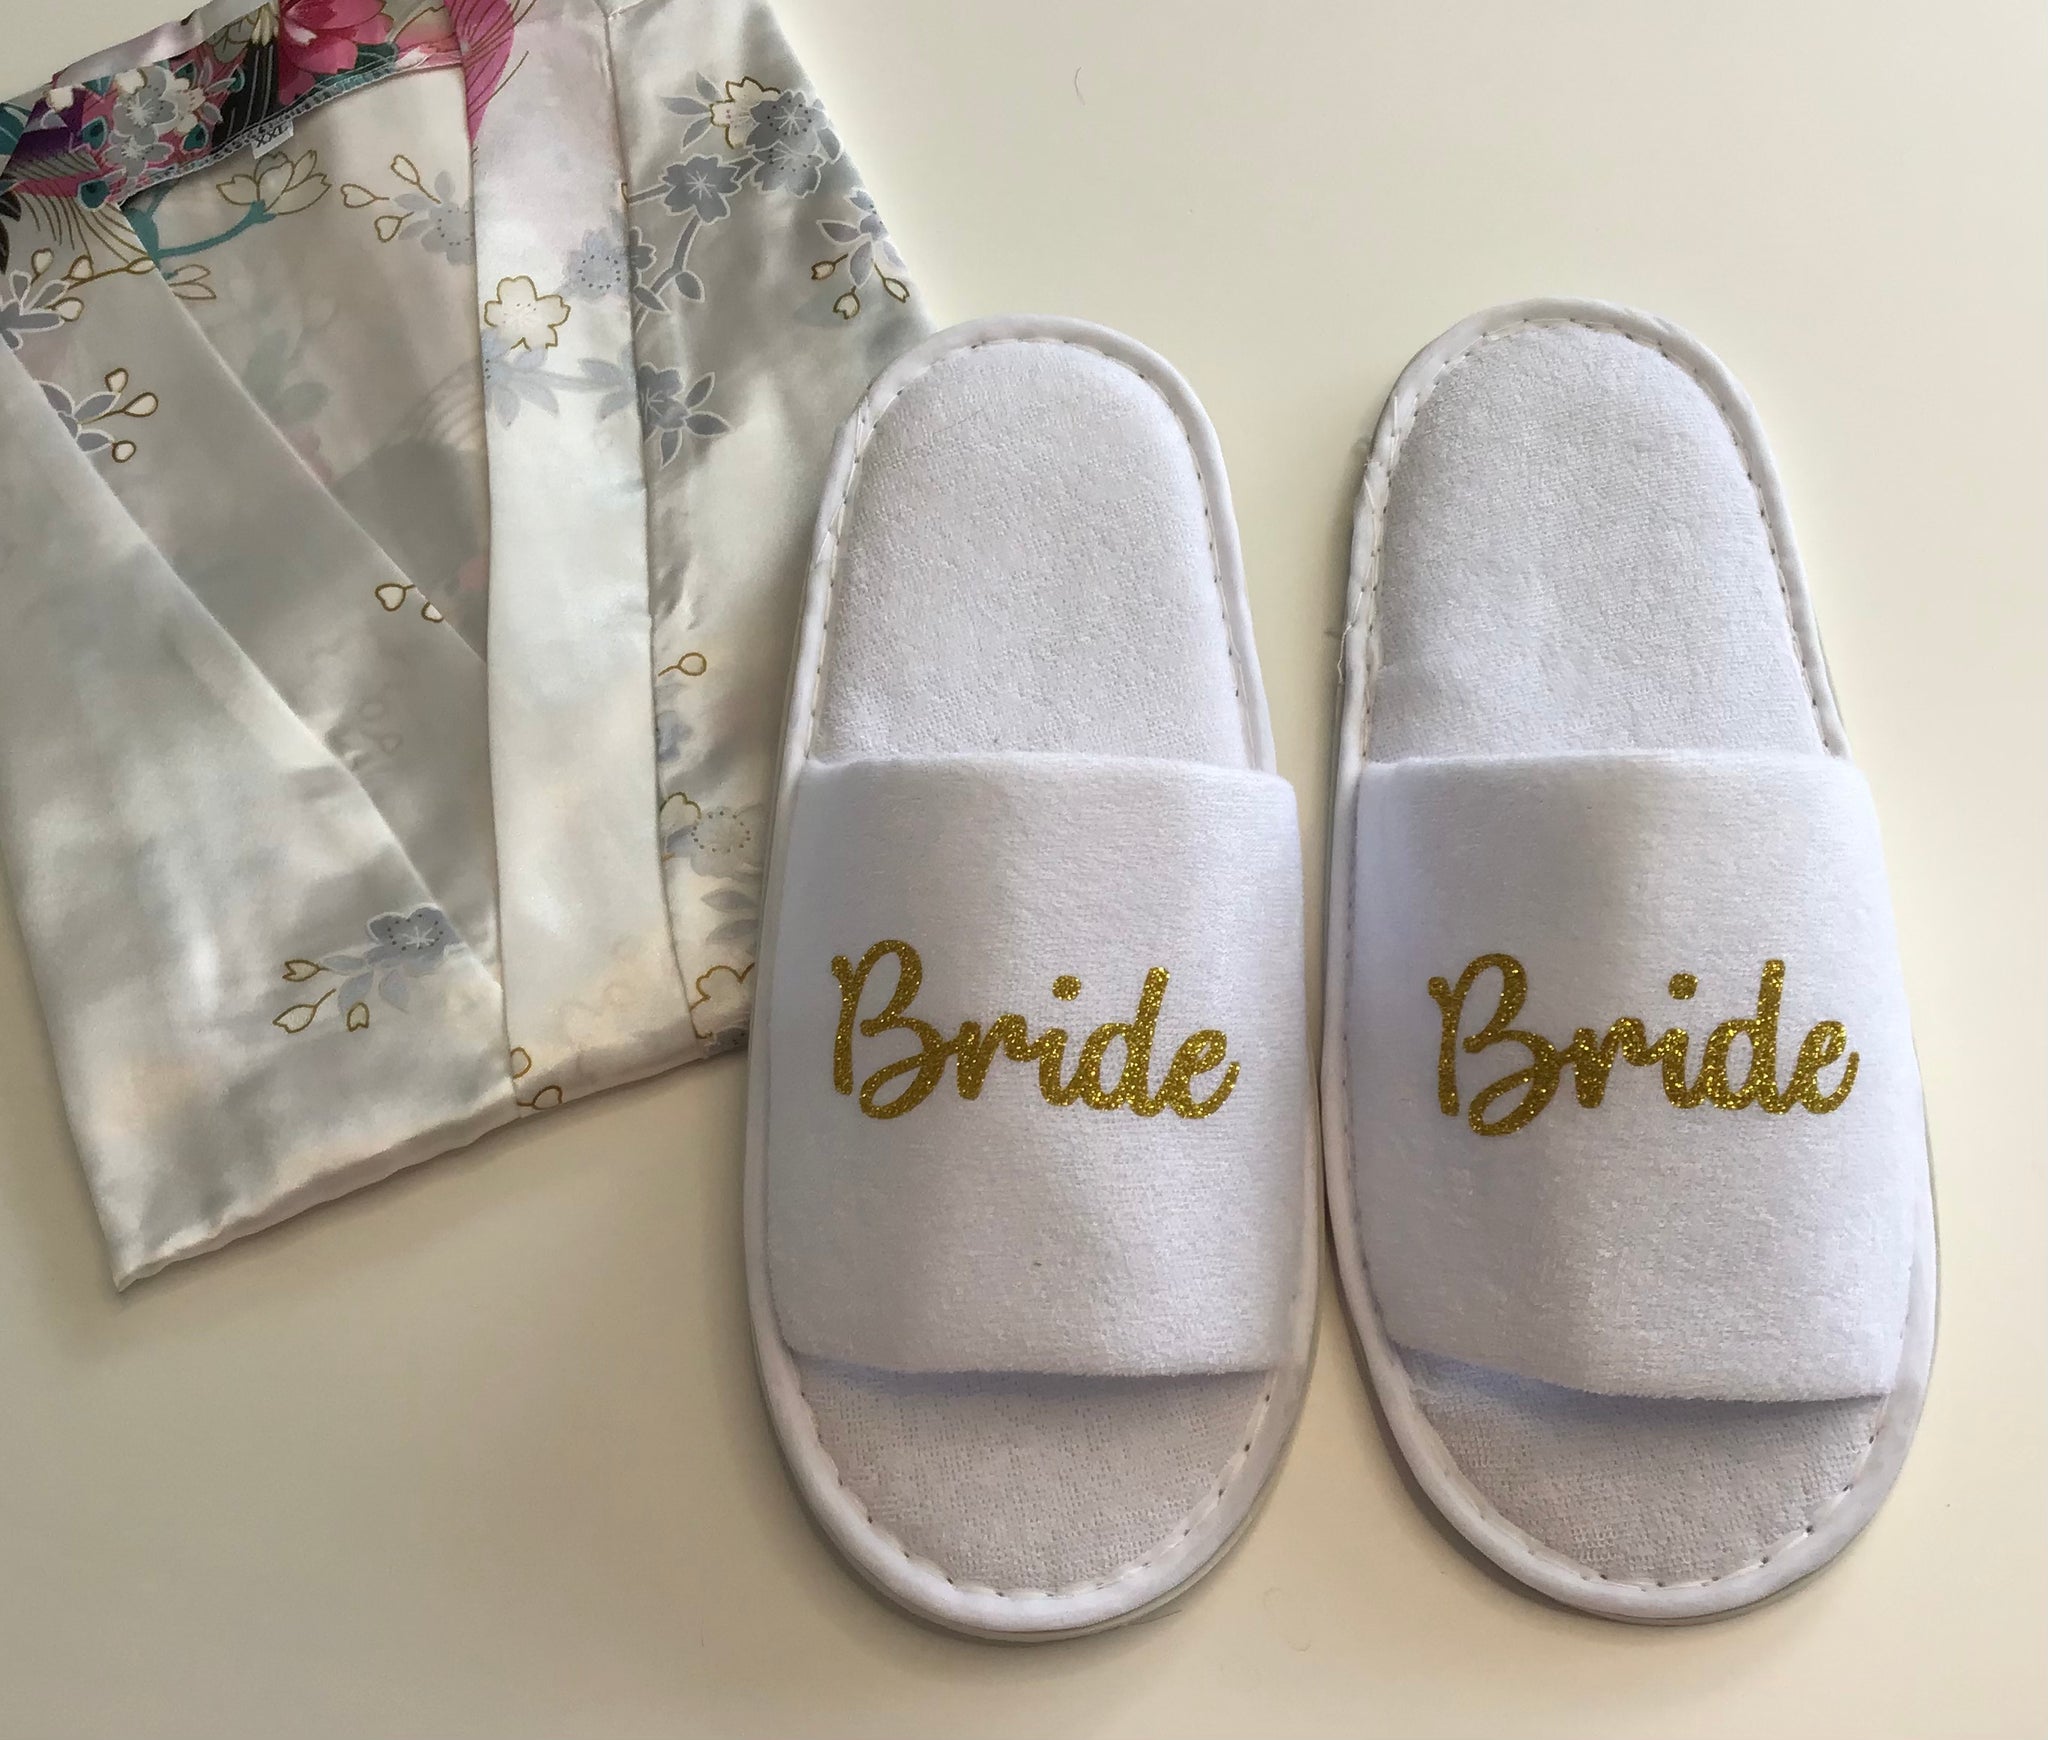 Bride Slippers - Gold Glitter Script, Style C Handmade